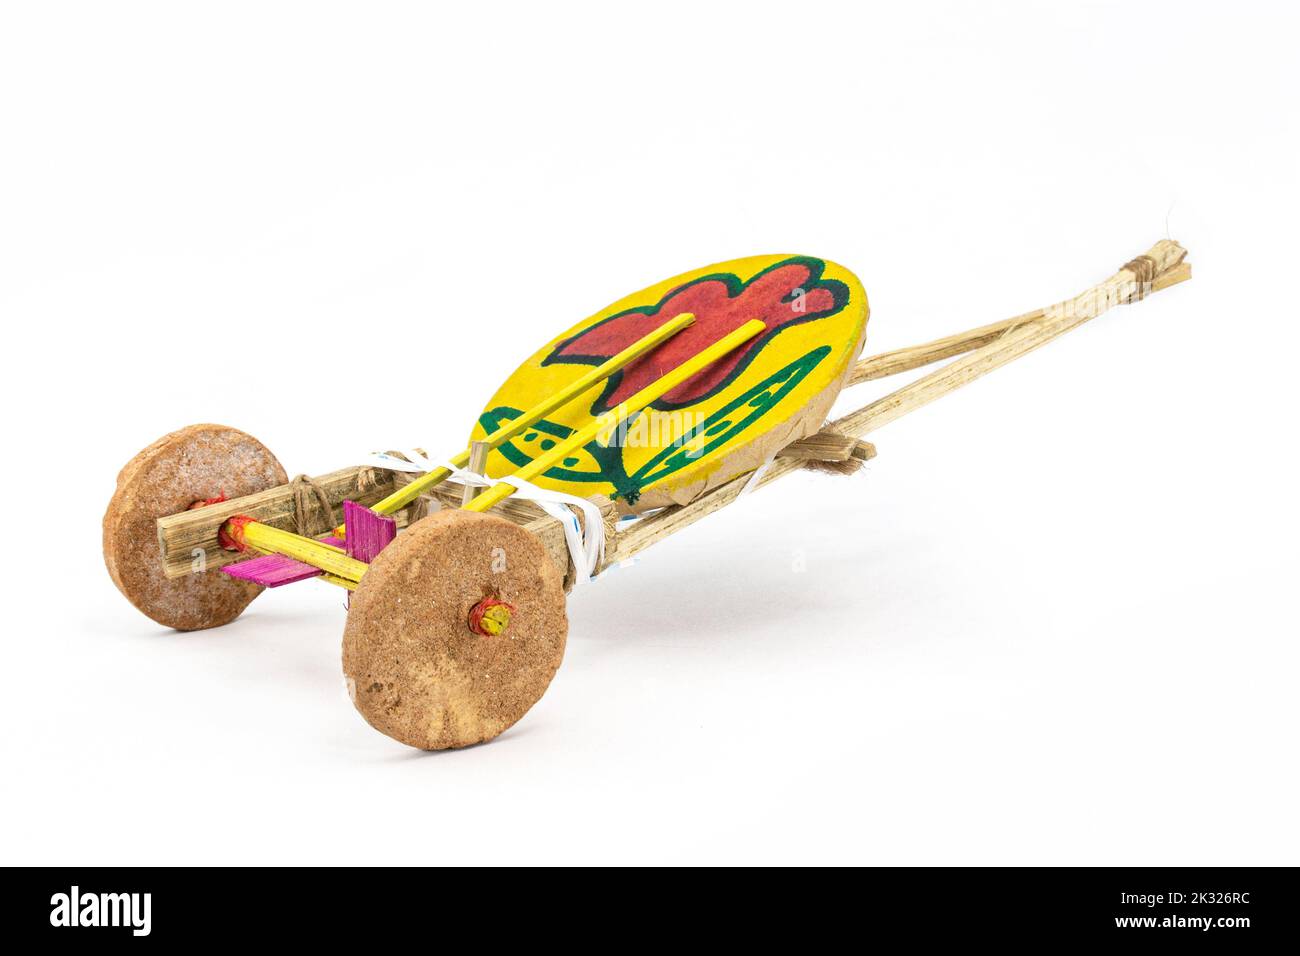 TomTom Gari. Traditionelles handgemachtes neues Jahr Karneval Waggon Spielzeug von Boishakhi mela in Bangladesch. Aus Lehm Radtrommel und Bambus-Stick ziehen mit s Stockfoto